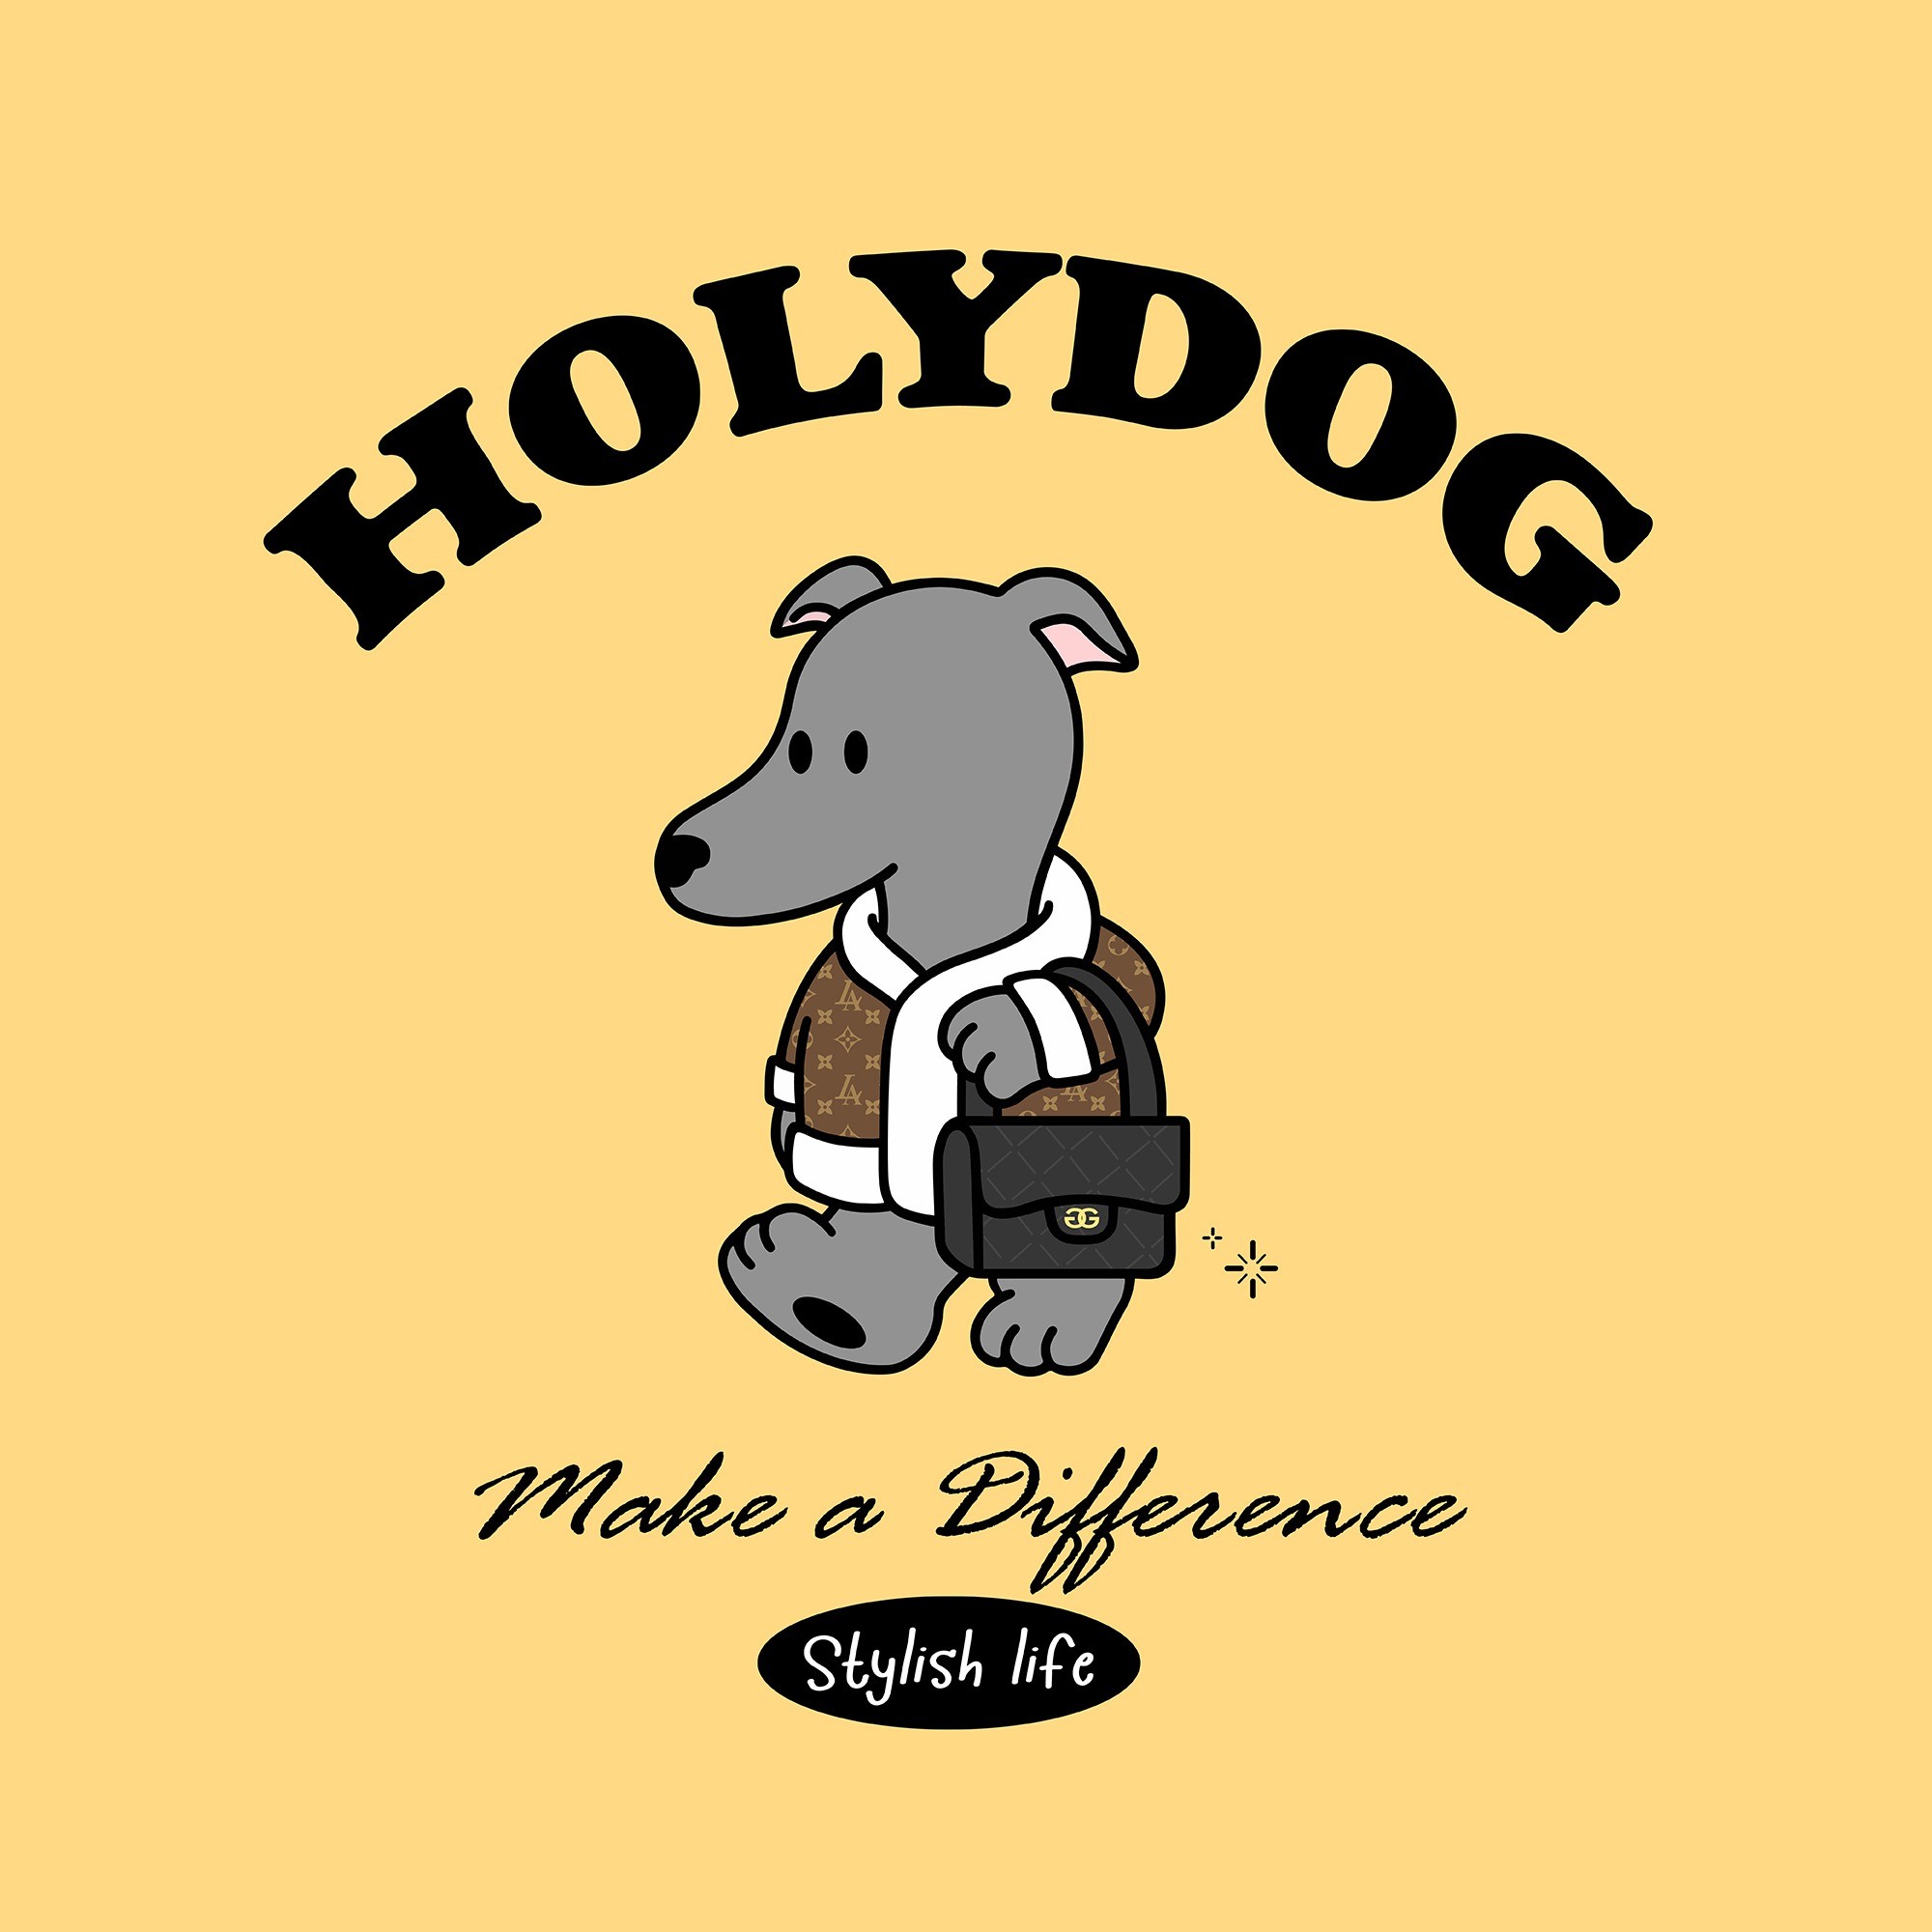 포트폴리오-반려동물 명품 의류점 "HOLYDOG" 로고디자인